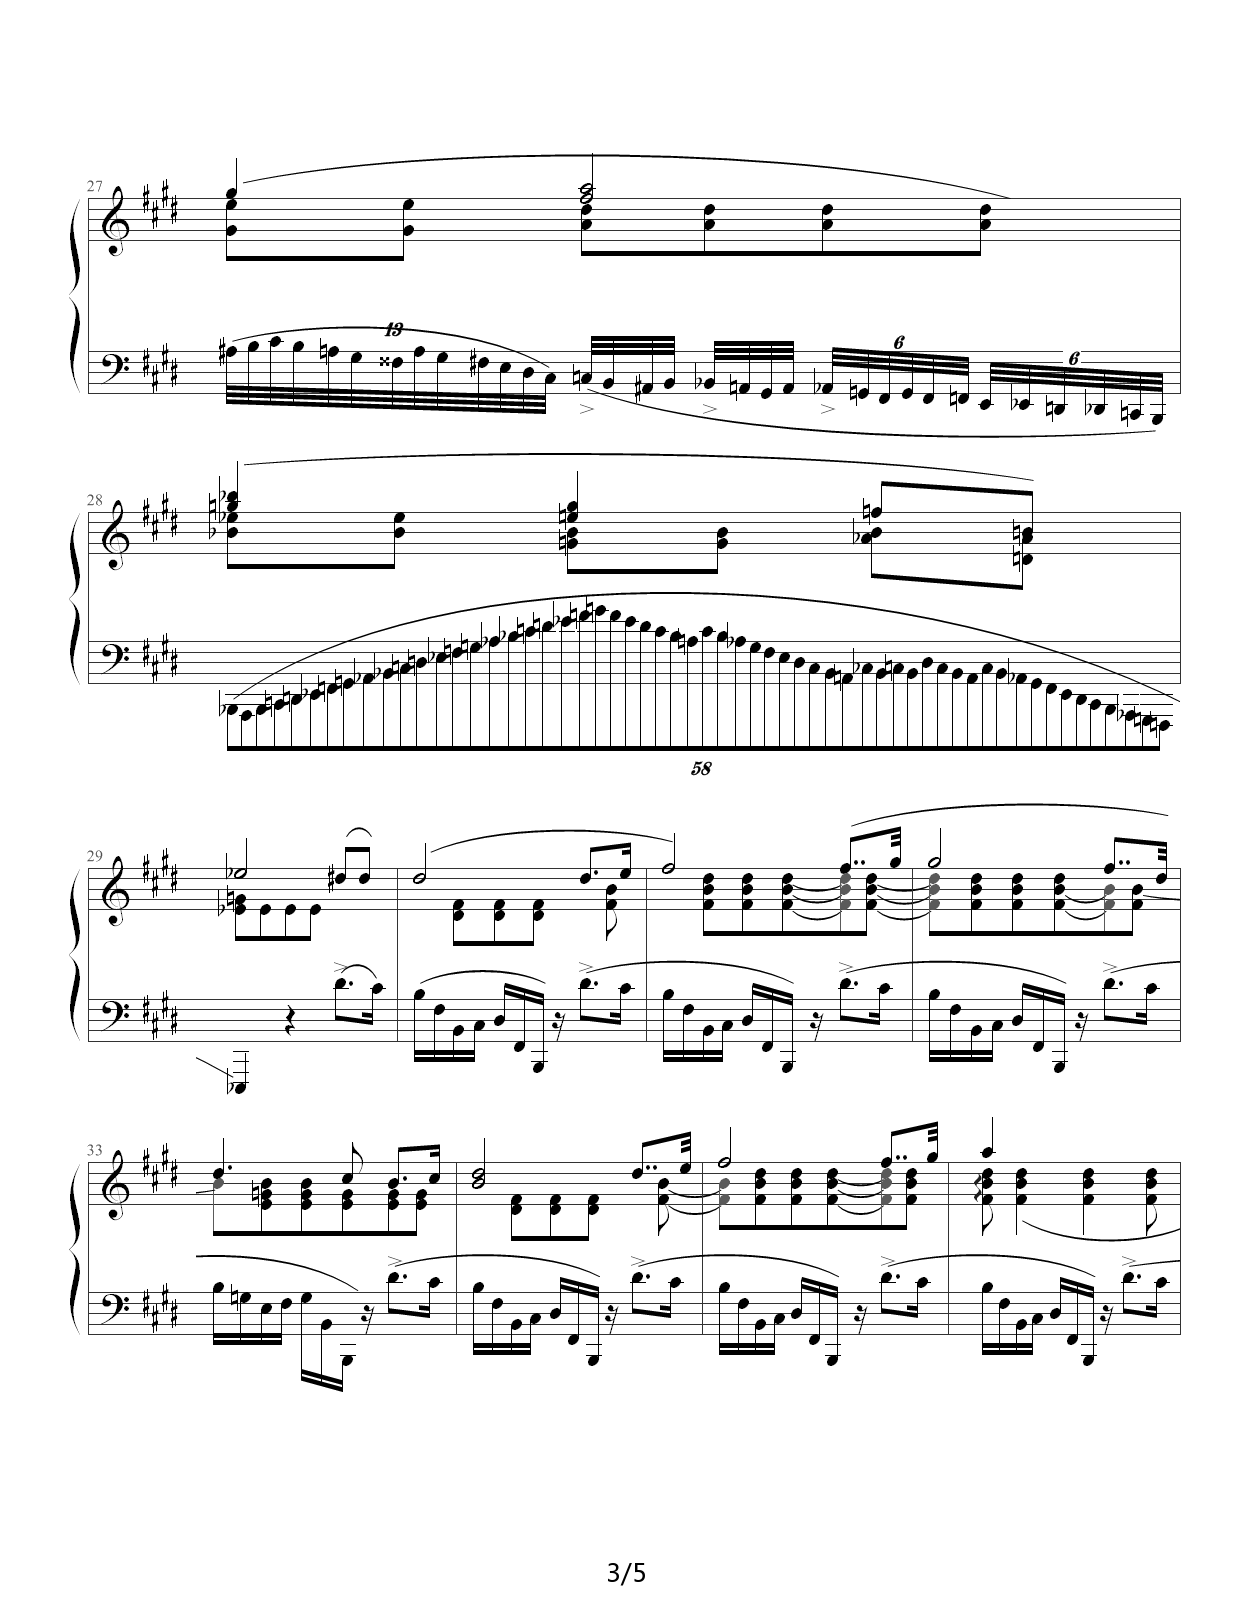 肖邦练习曲第19首――大提琴练习曲 E调